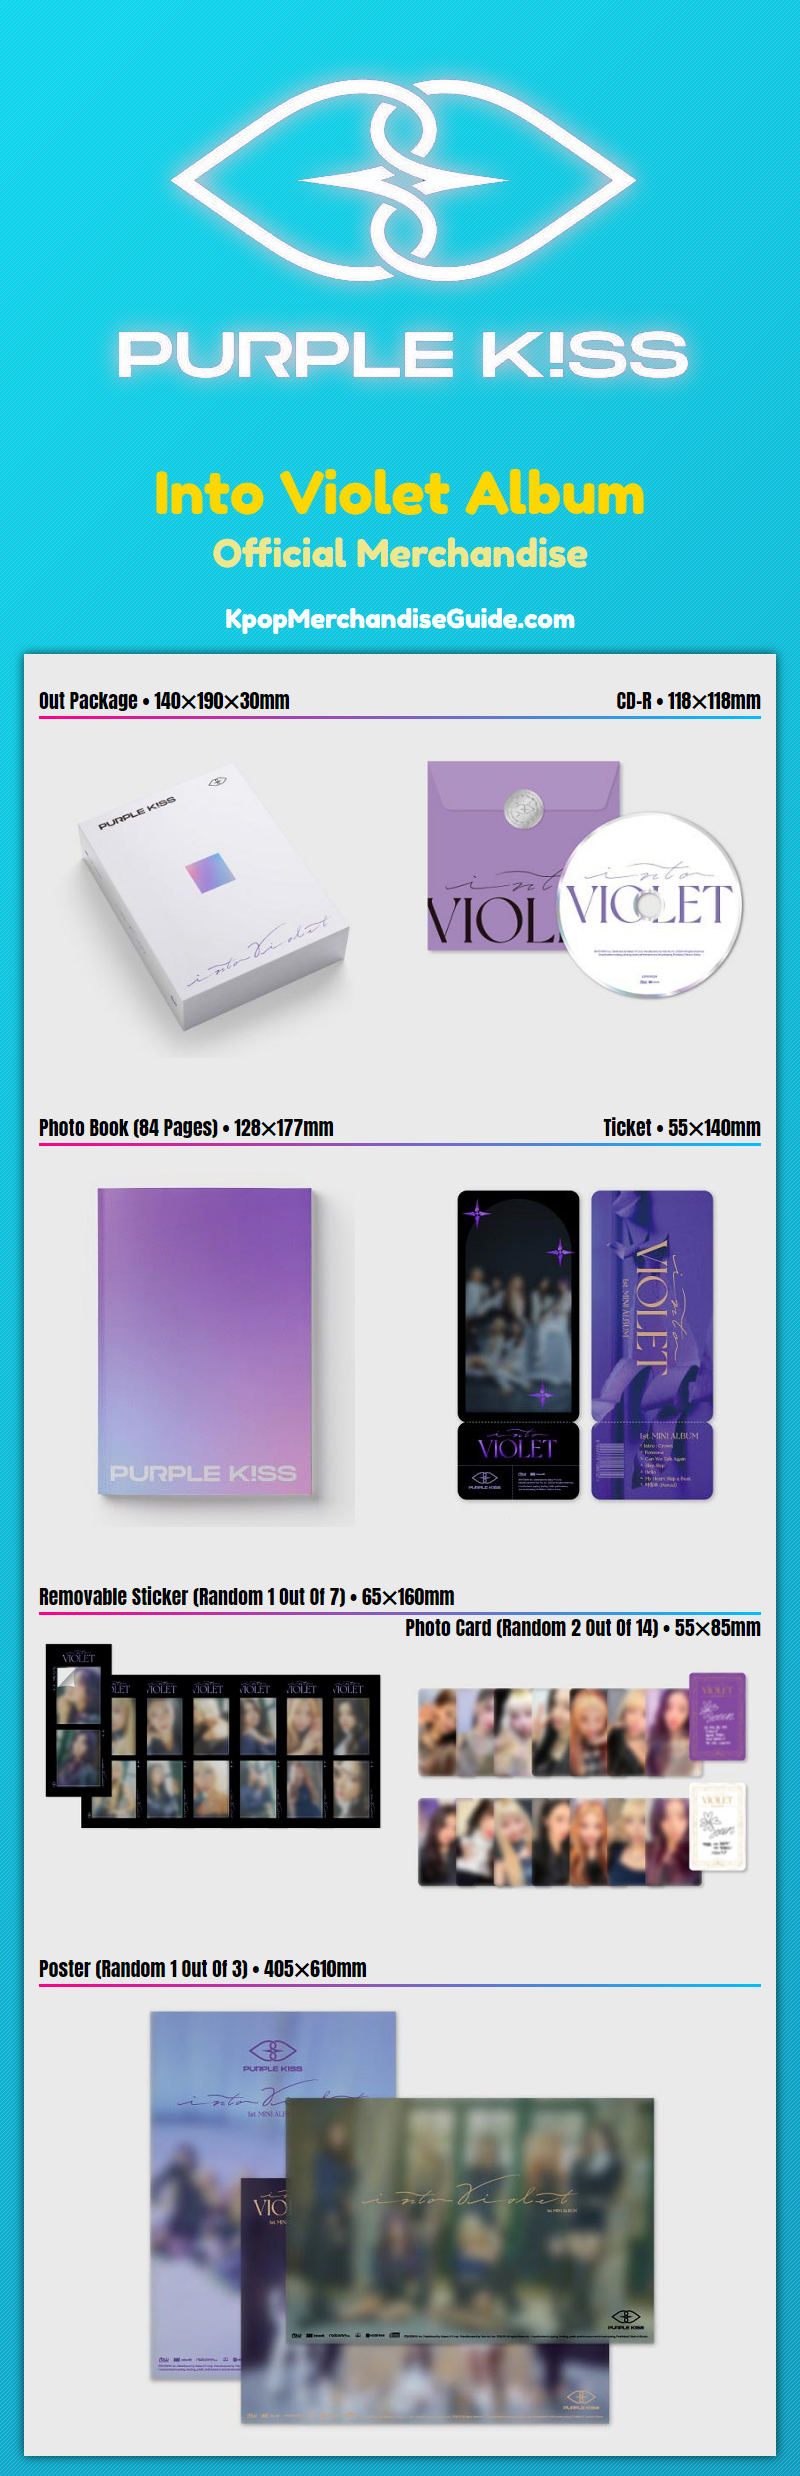 Purple Kiss Into Violet Album Merchandise